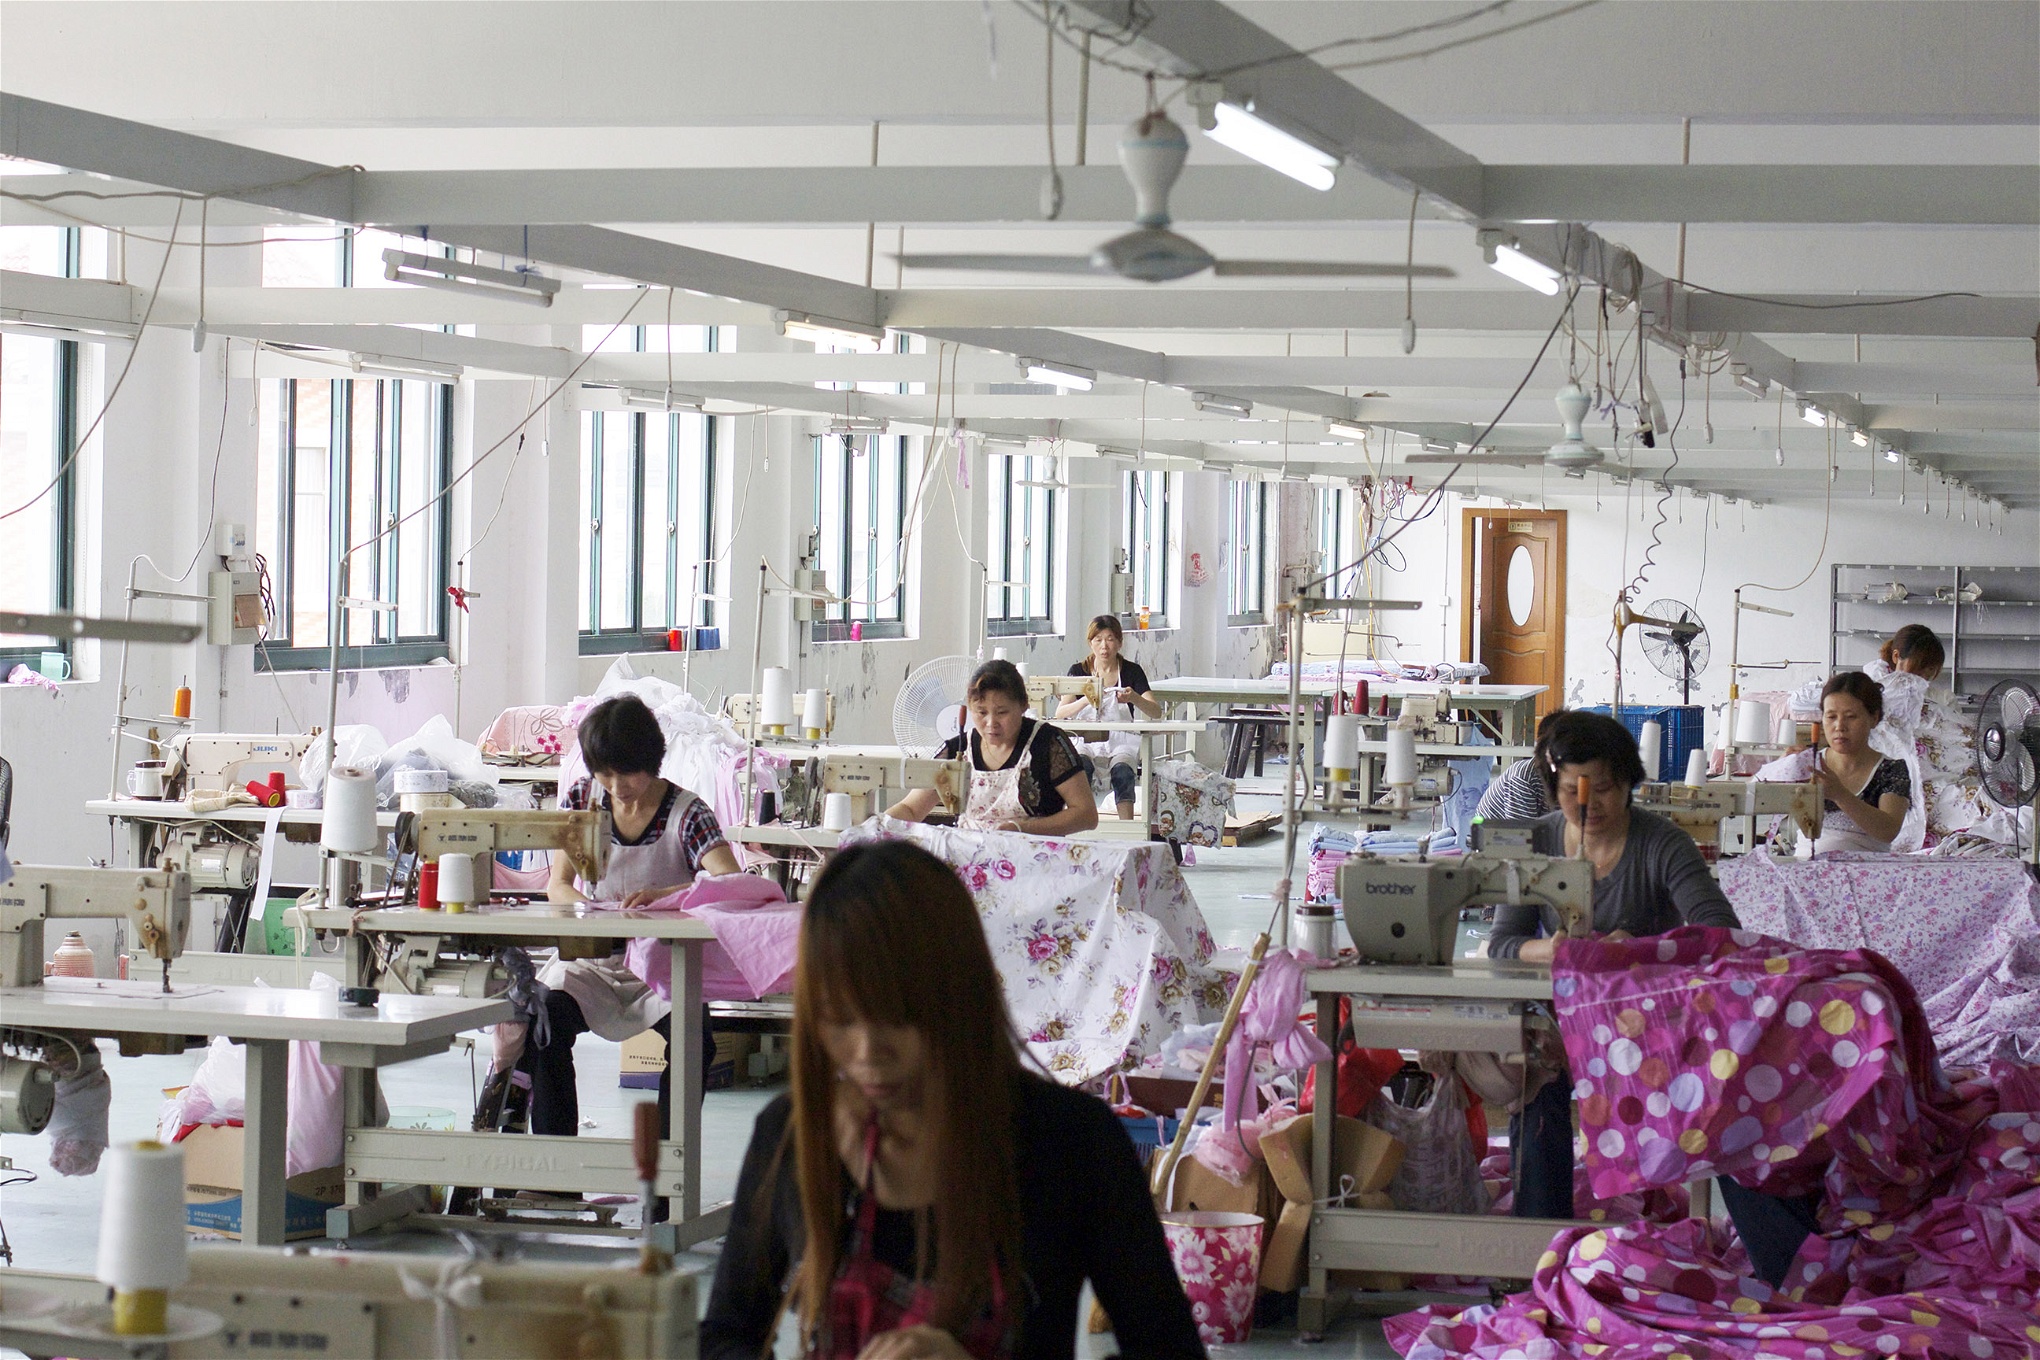 Arbetare i sidenfabrik i Kina, 2013. Än i dag tillbakavisas krav på att minska exploateringen av arbetare med att det är en omöjlighet för den fria marknaden.